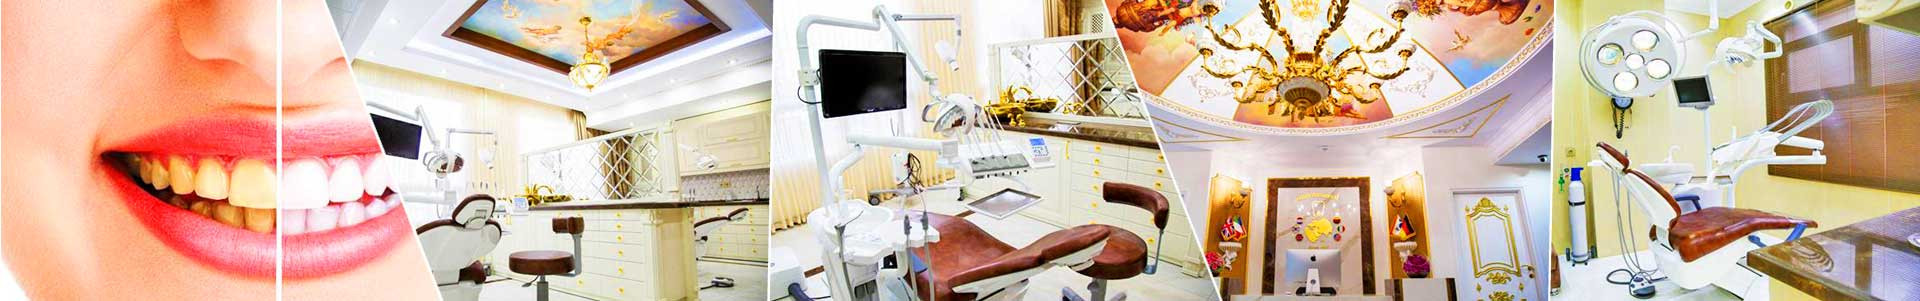 بهترین خرید دندانپزشکی دکتر سید محسنی تهران با بیشترین درصد تخفیف در قیمت - 50%